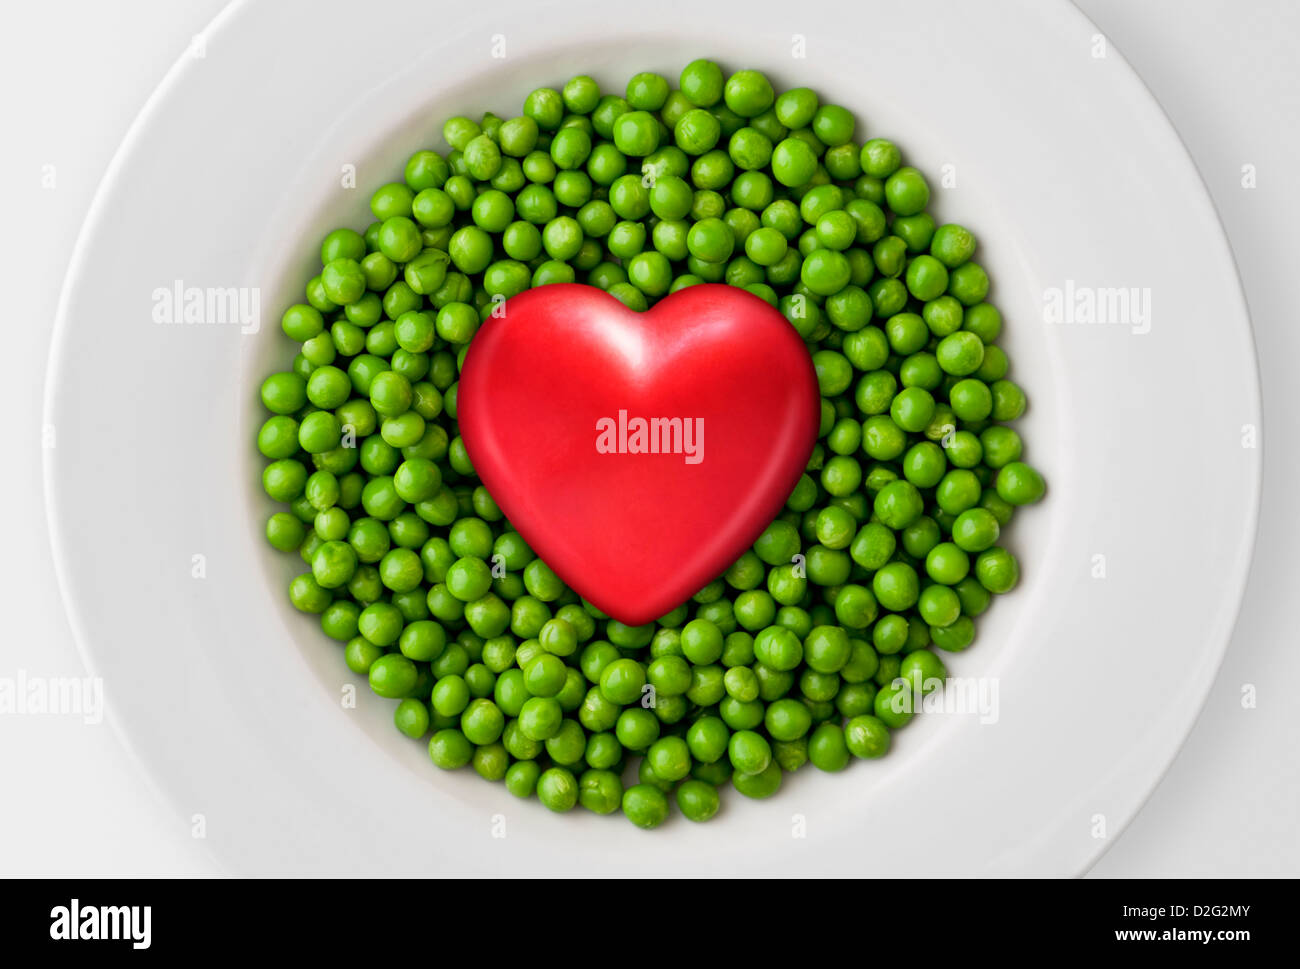 Gesunde Ernährung Konzept, ein rotes Herz auf frische grüne Erbsen Stockfoto